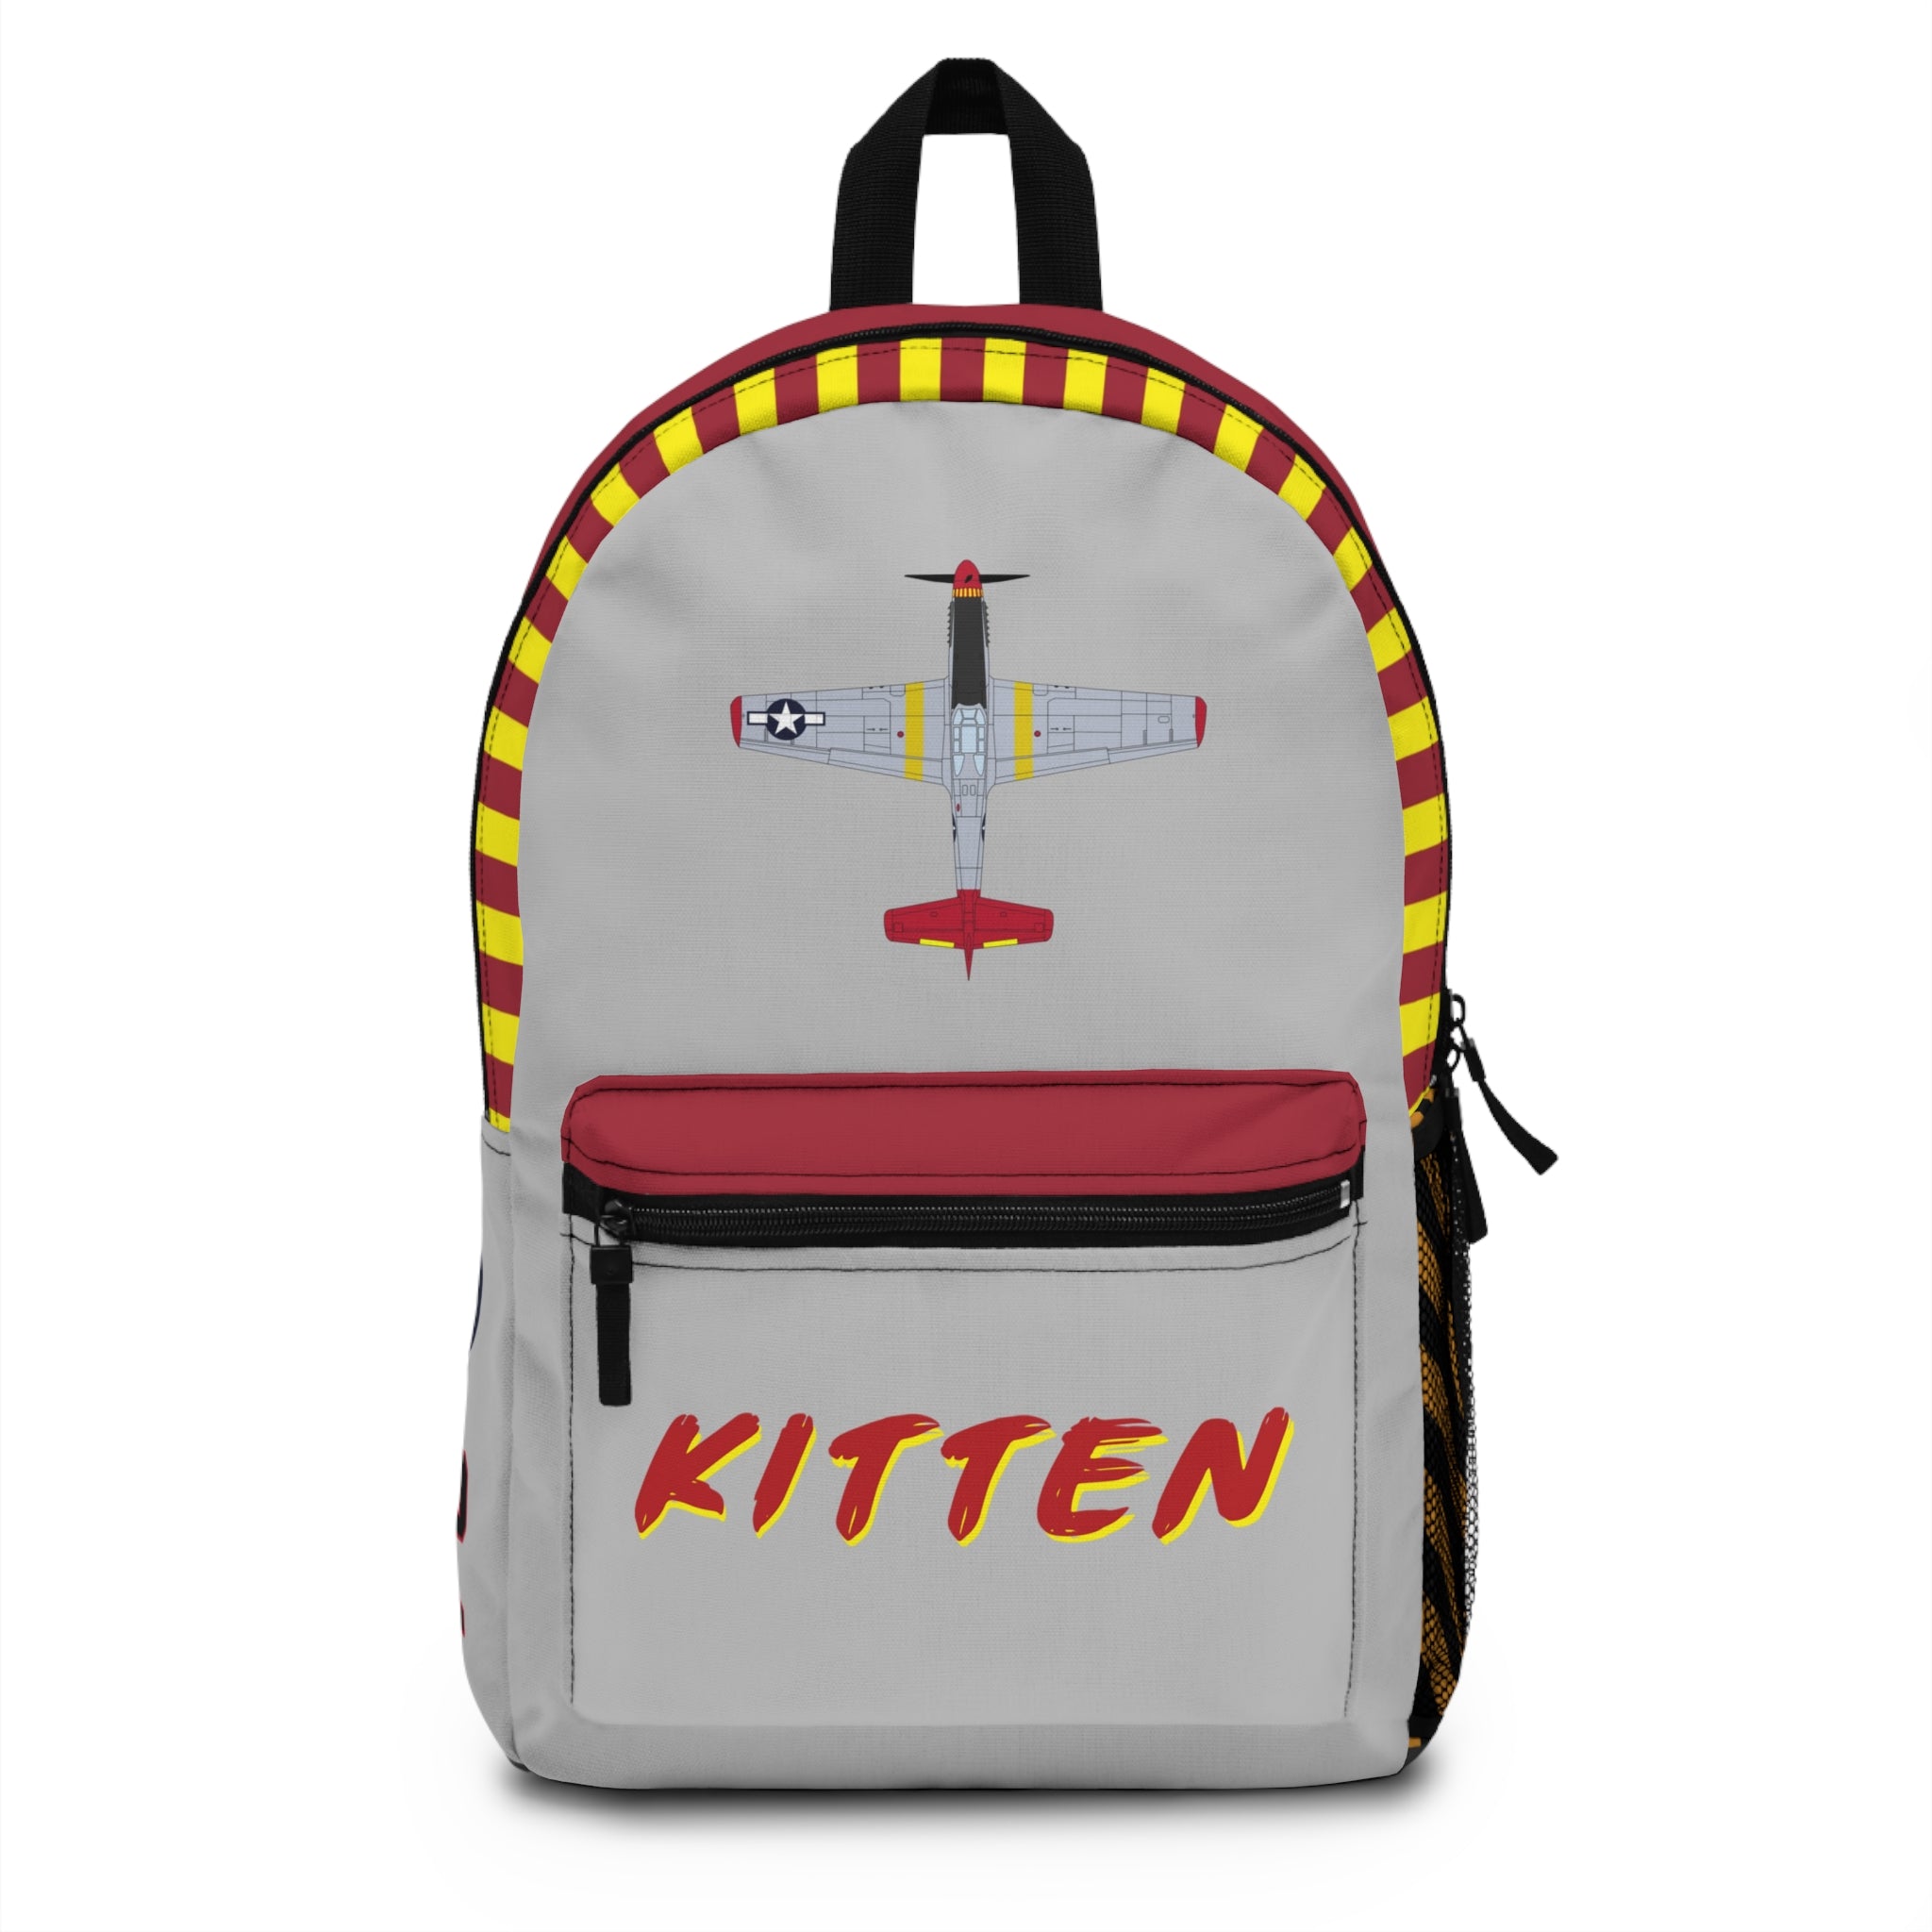 P-51 "Kitten" Backpack - I Love a Hangar